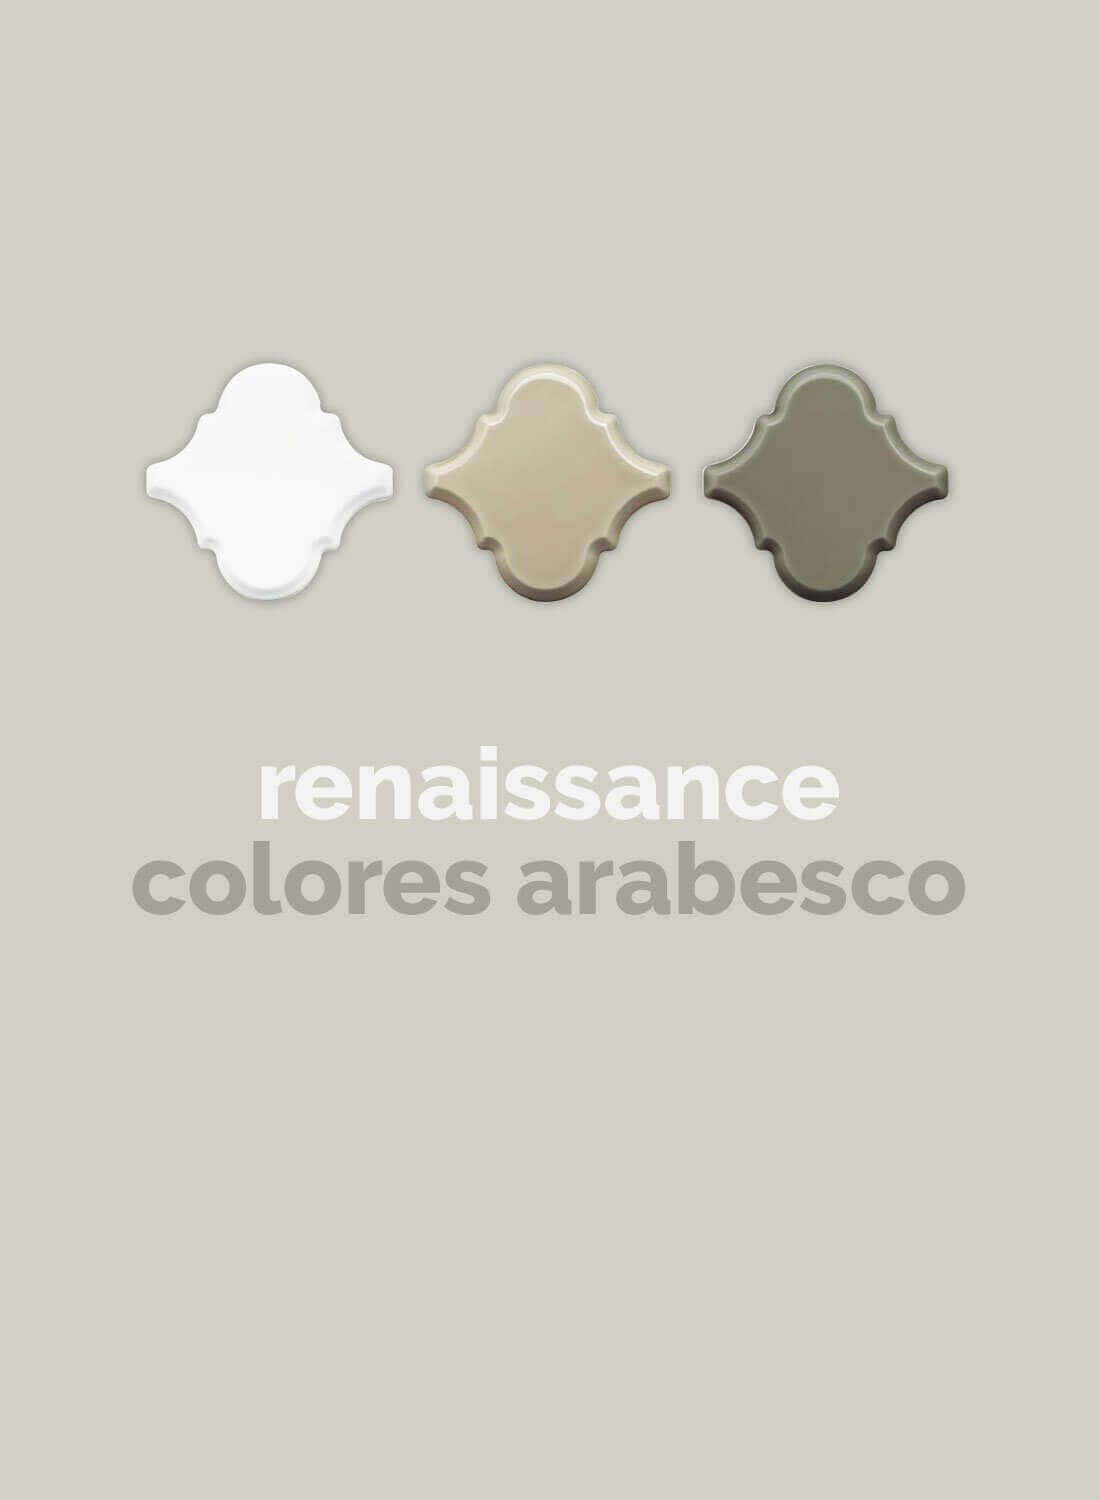 adex-renaissance-colores-biselado